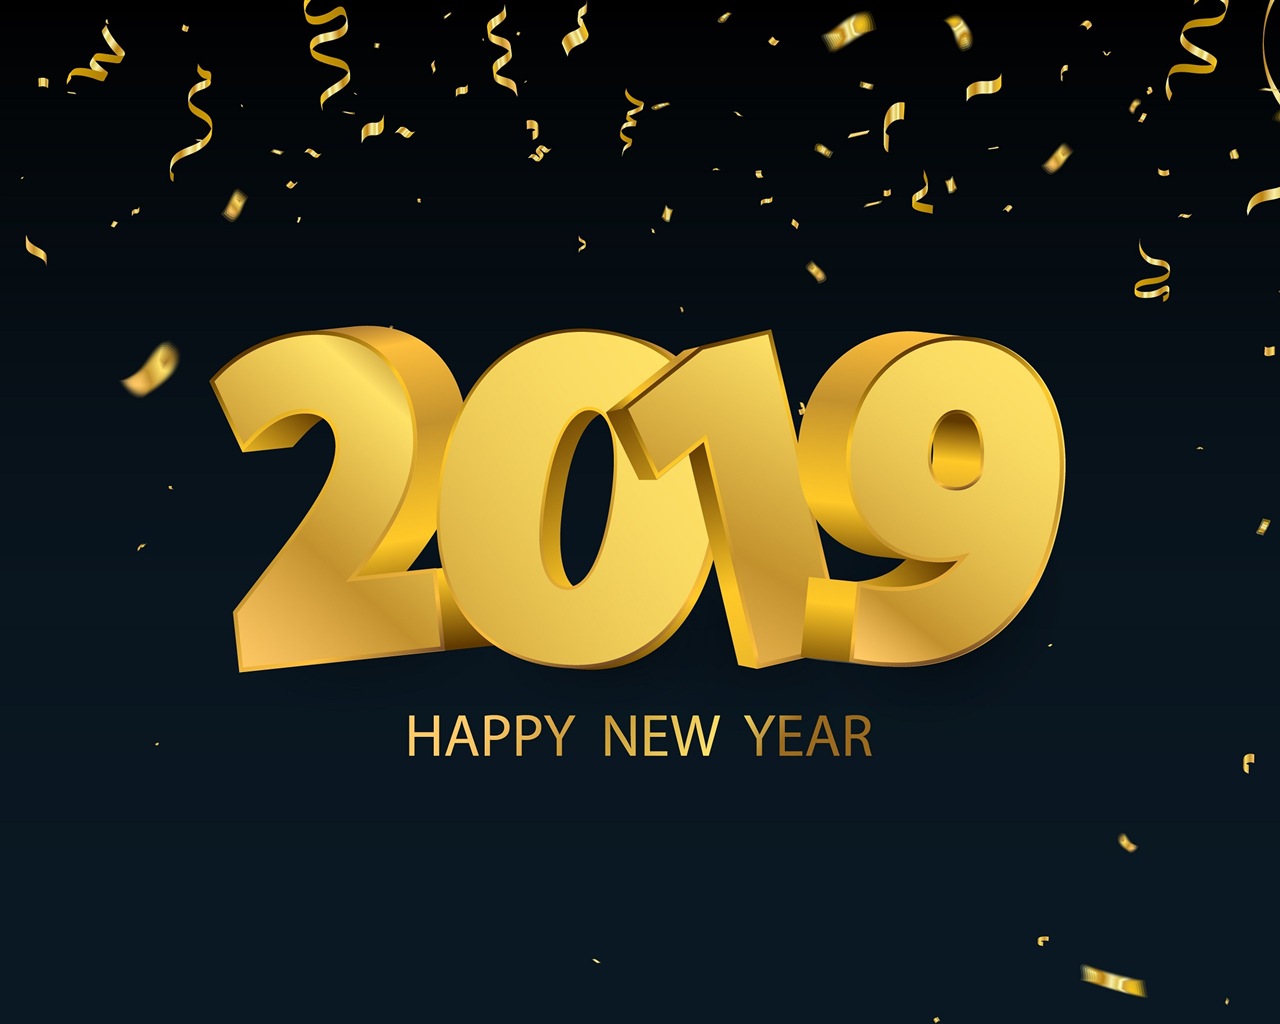 Feliz año nuevo 2019 HD wallpapers #13 - 1280x1024